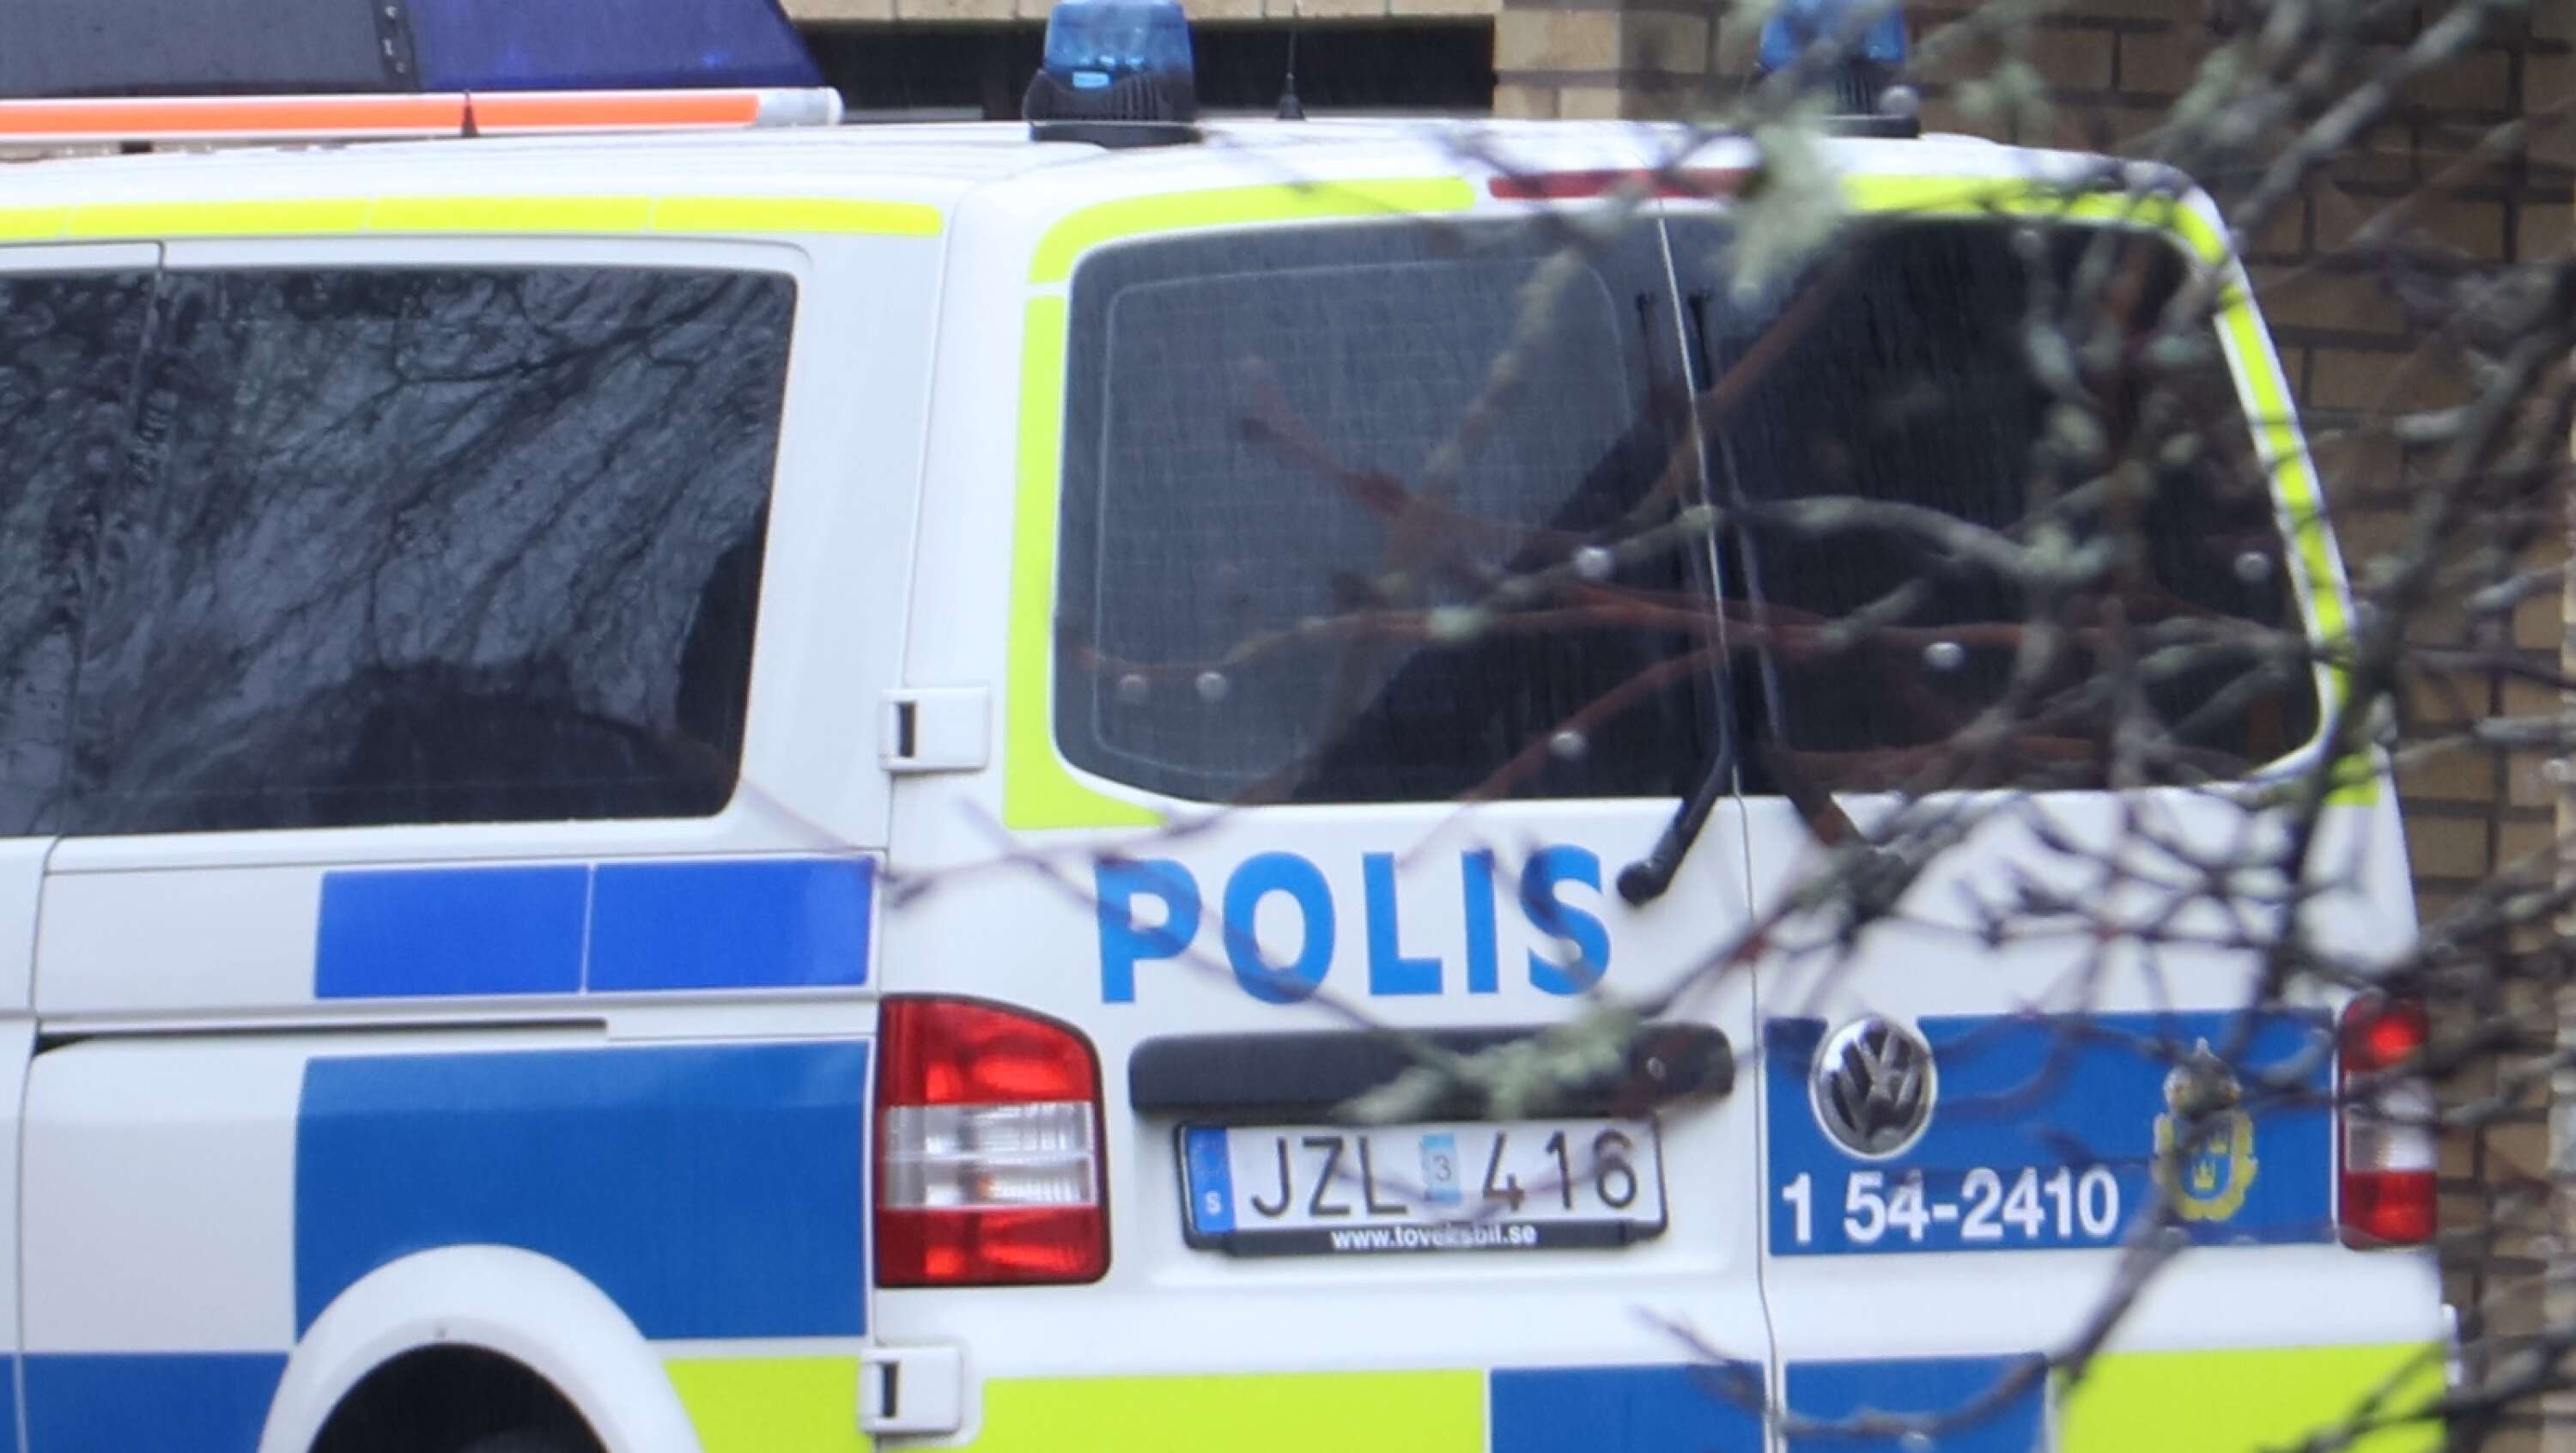 Polisens mobila kontor bevakade adressen i Billingsfors där mordförsöket skedde.